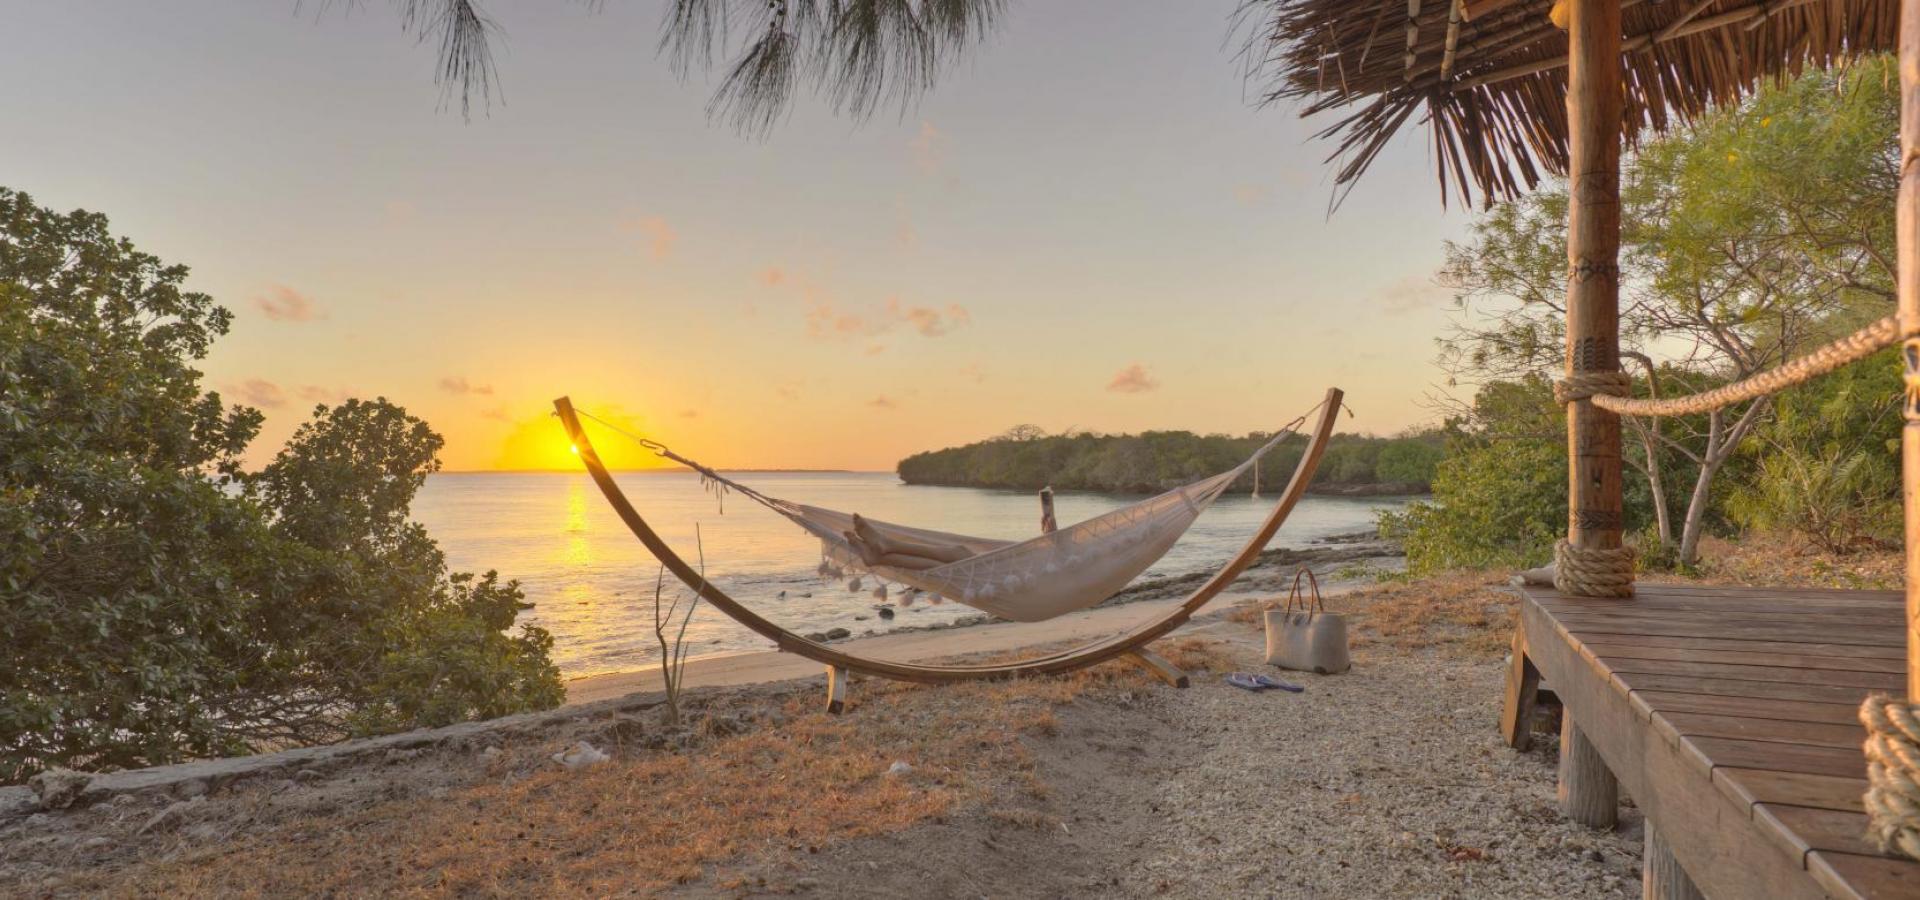 Deluxe Safari & Inselromantik -Entspannte Luxus-Reise für Verliebte Honeymooner